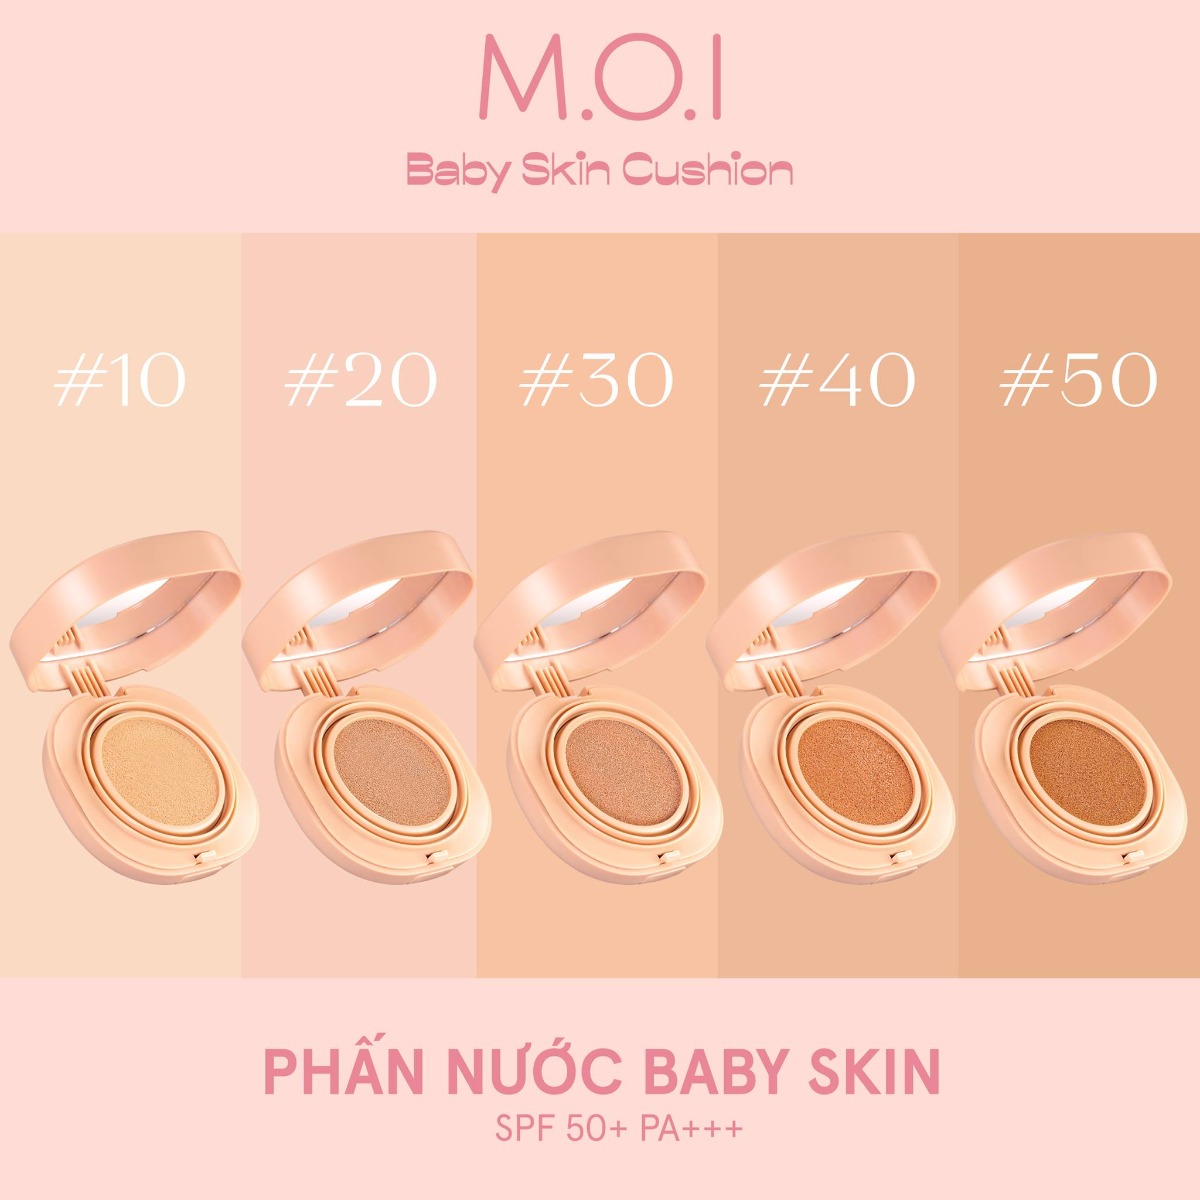 Phấn Nước M.O.I Baby Skin Cushion có 5 tông màu từ ngăm đến sáng hợp với làn da của phụ nữ Á đông.